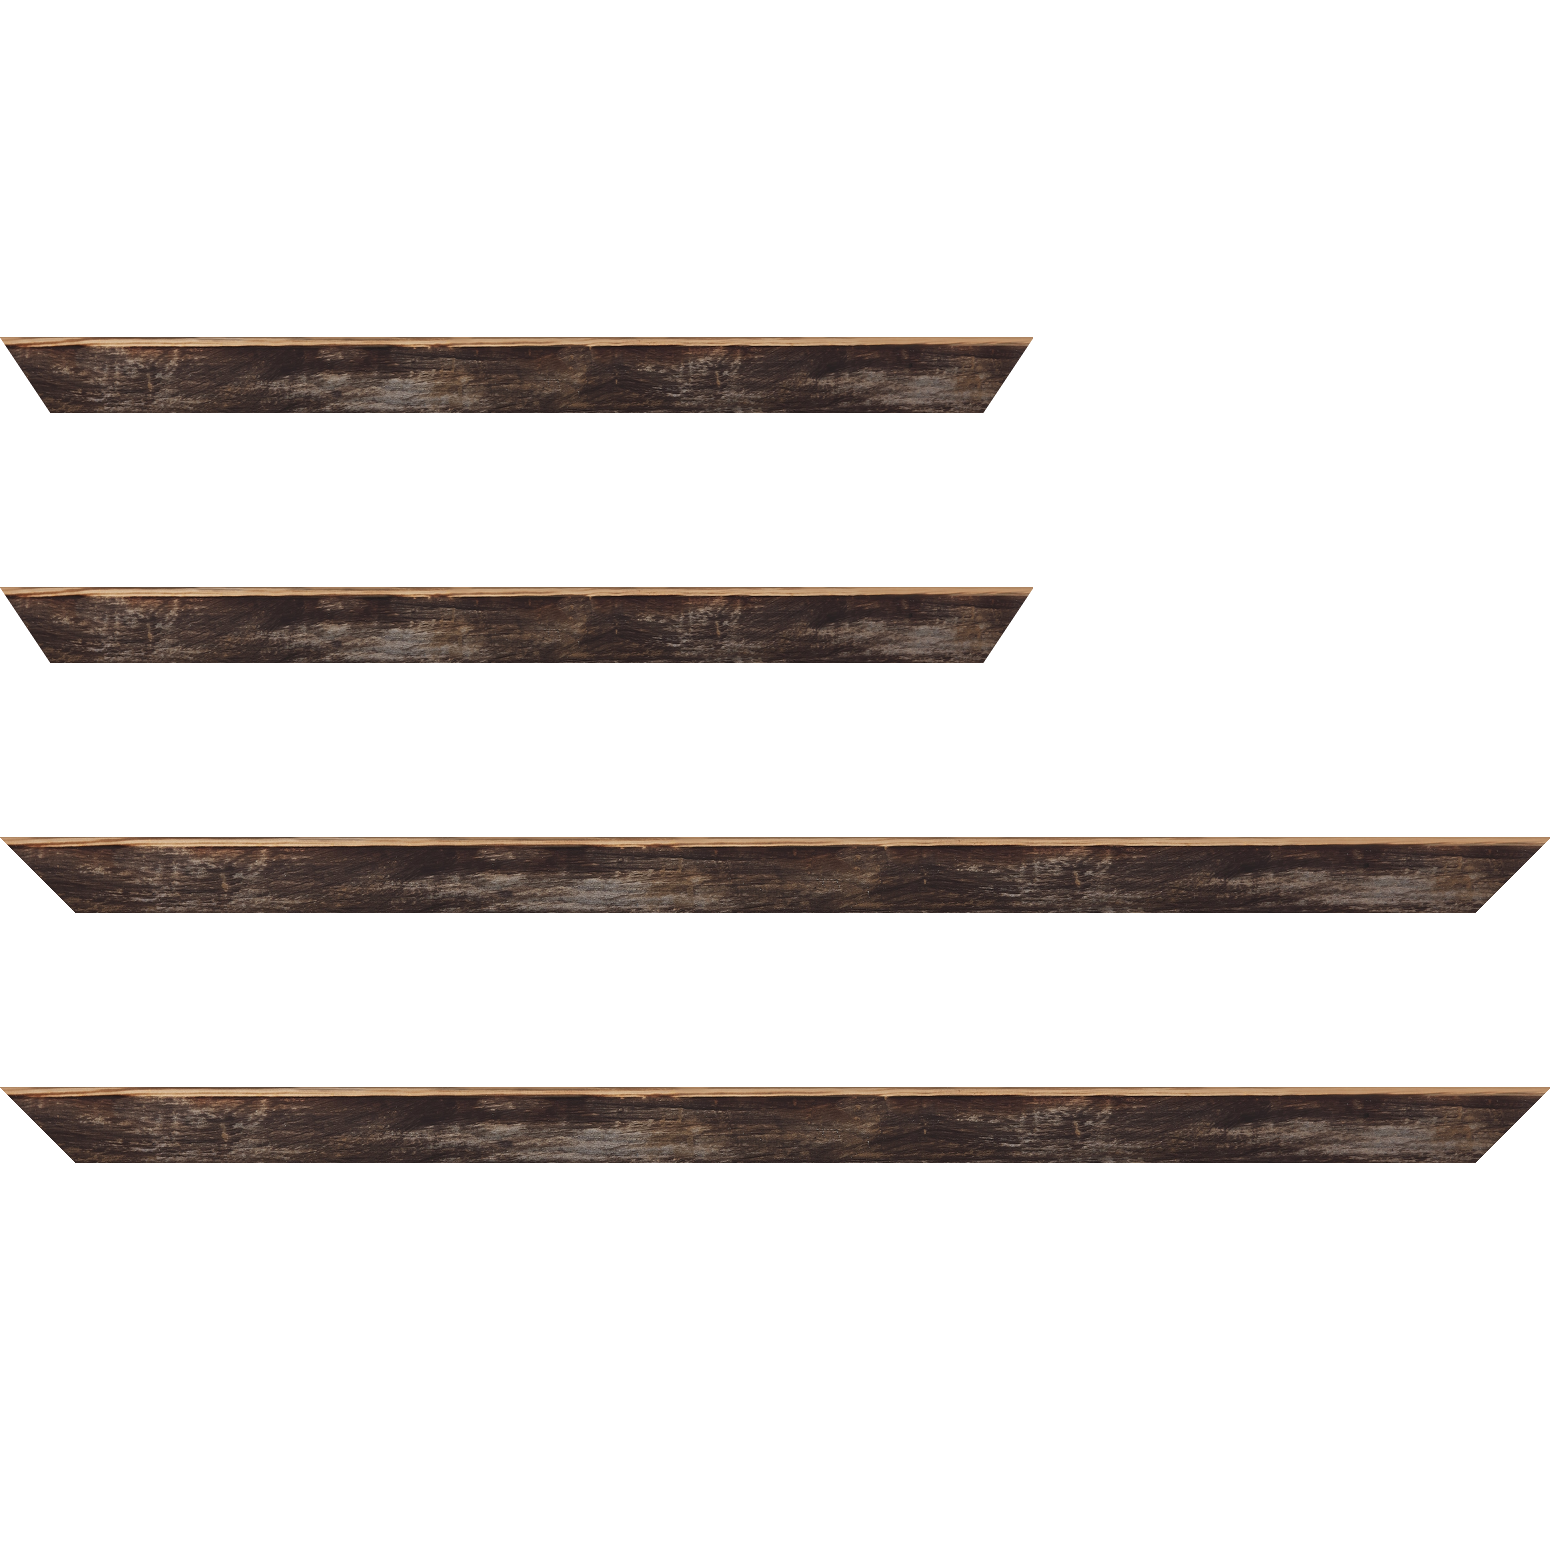 Baguette bois profil arrondi en pente plongeant largeur 2.4cm couleur noir ébène effet ressuyé, angle du cadre extérieur filet naturel